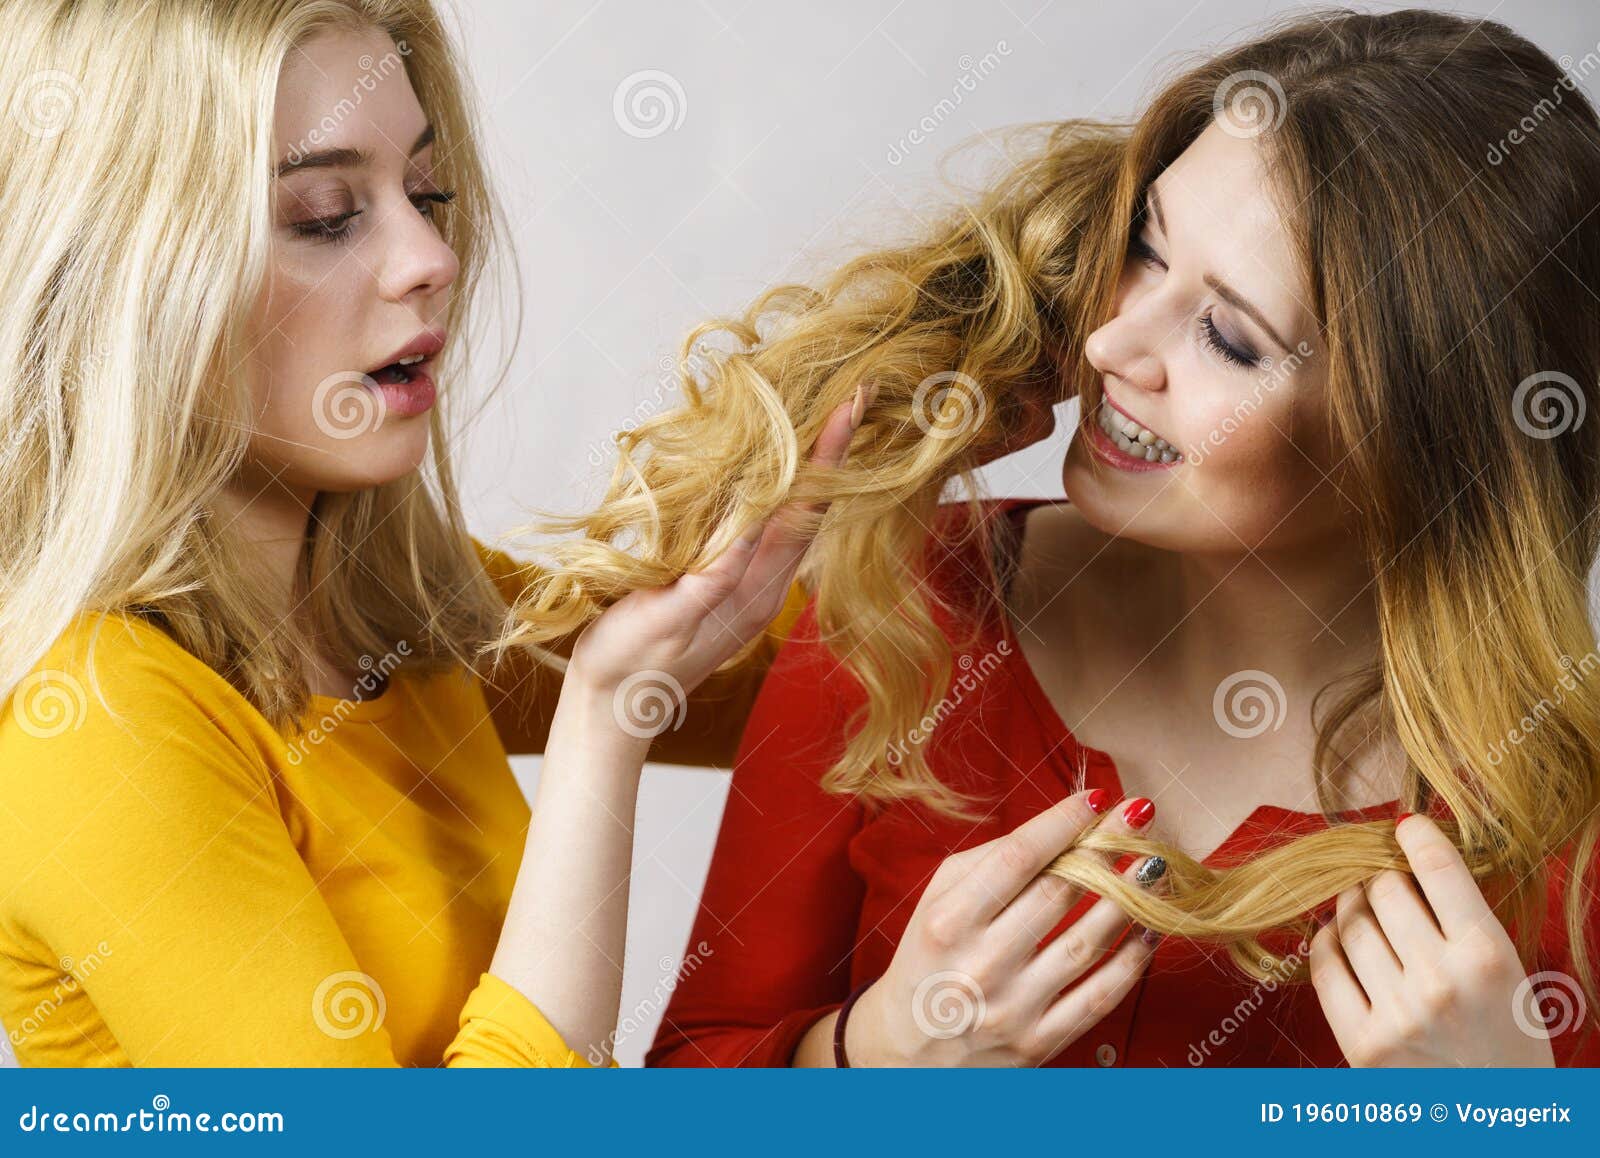 Два Цвет Длинных Волос Фото